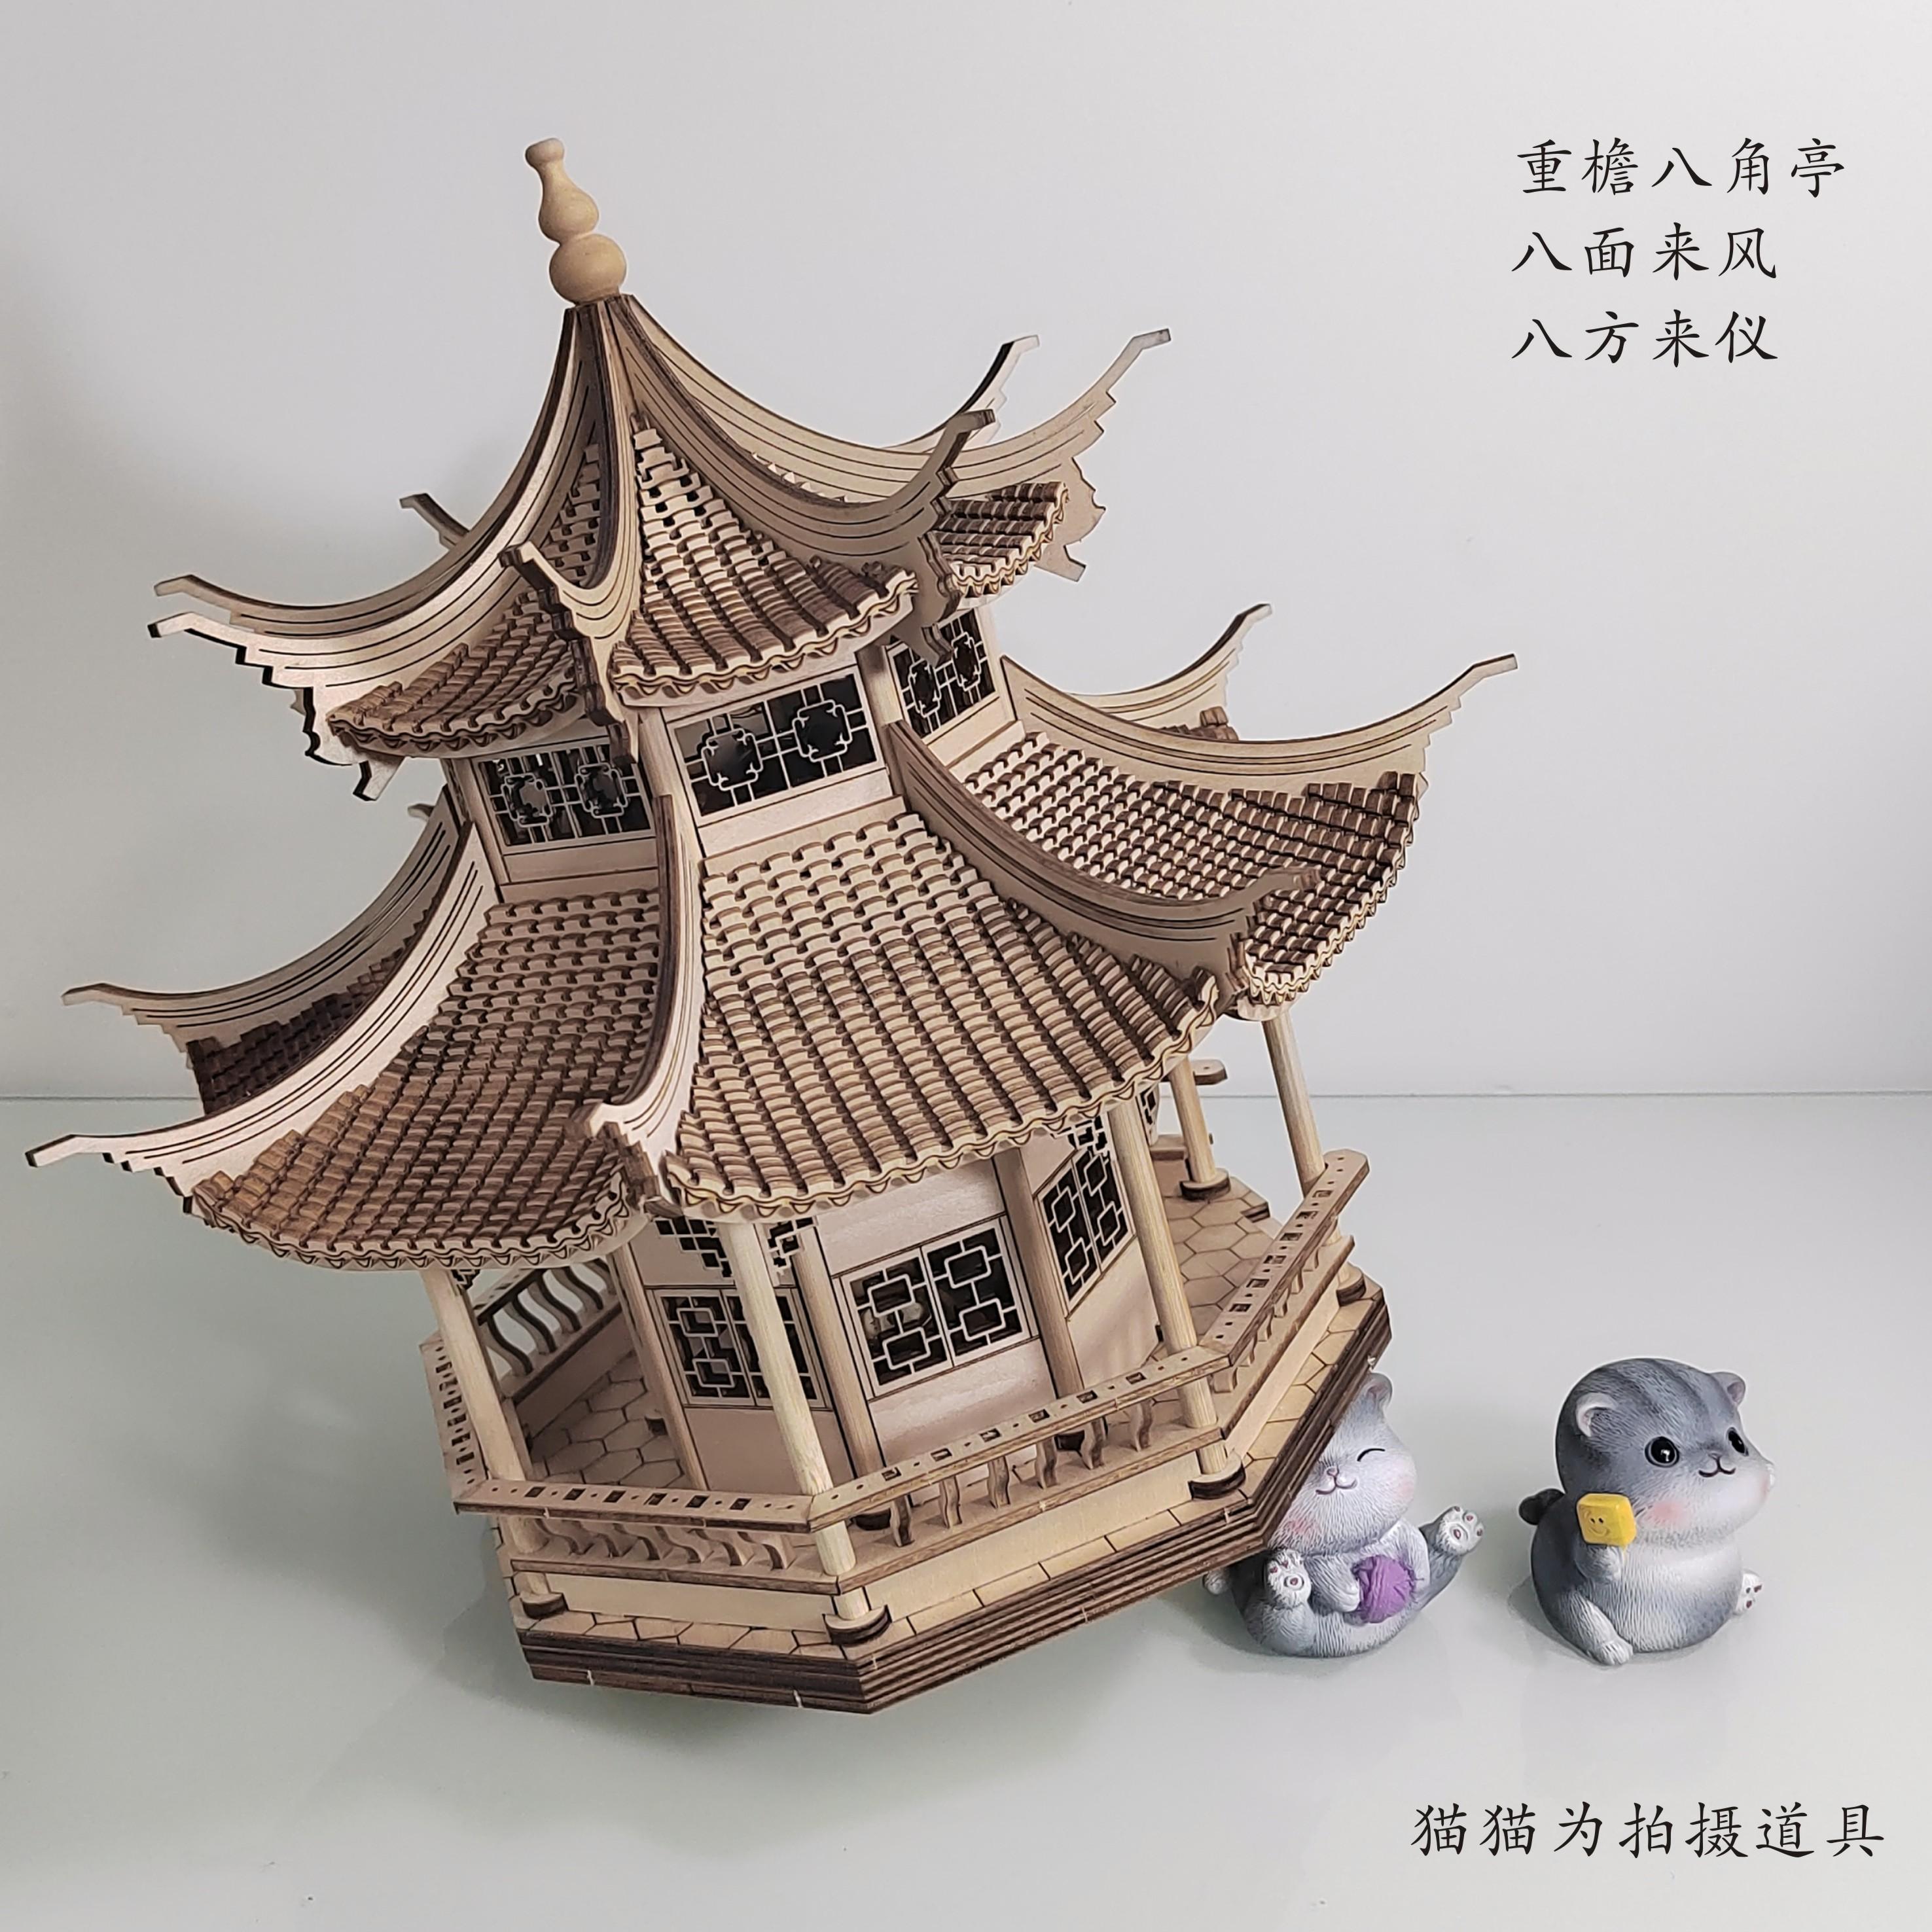 中国古建筑拼装模型手工八角亭摆件中国风榫卯结构